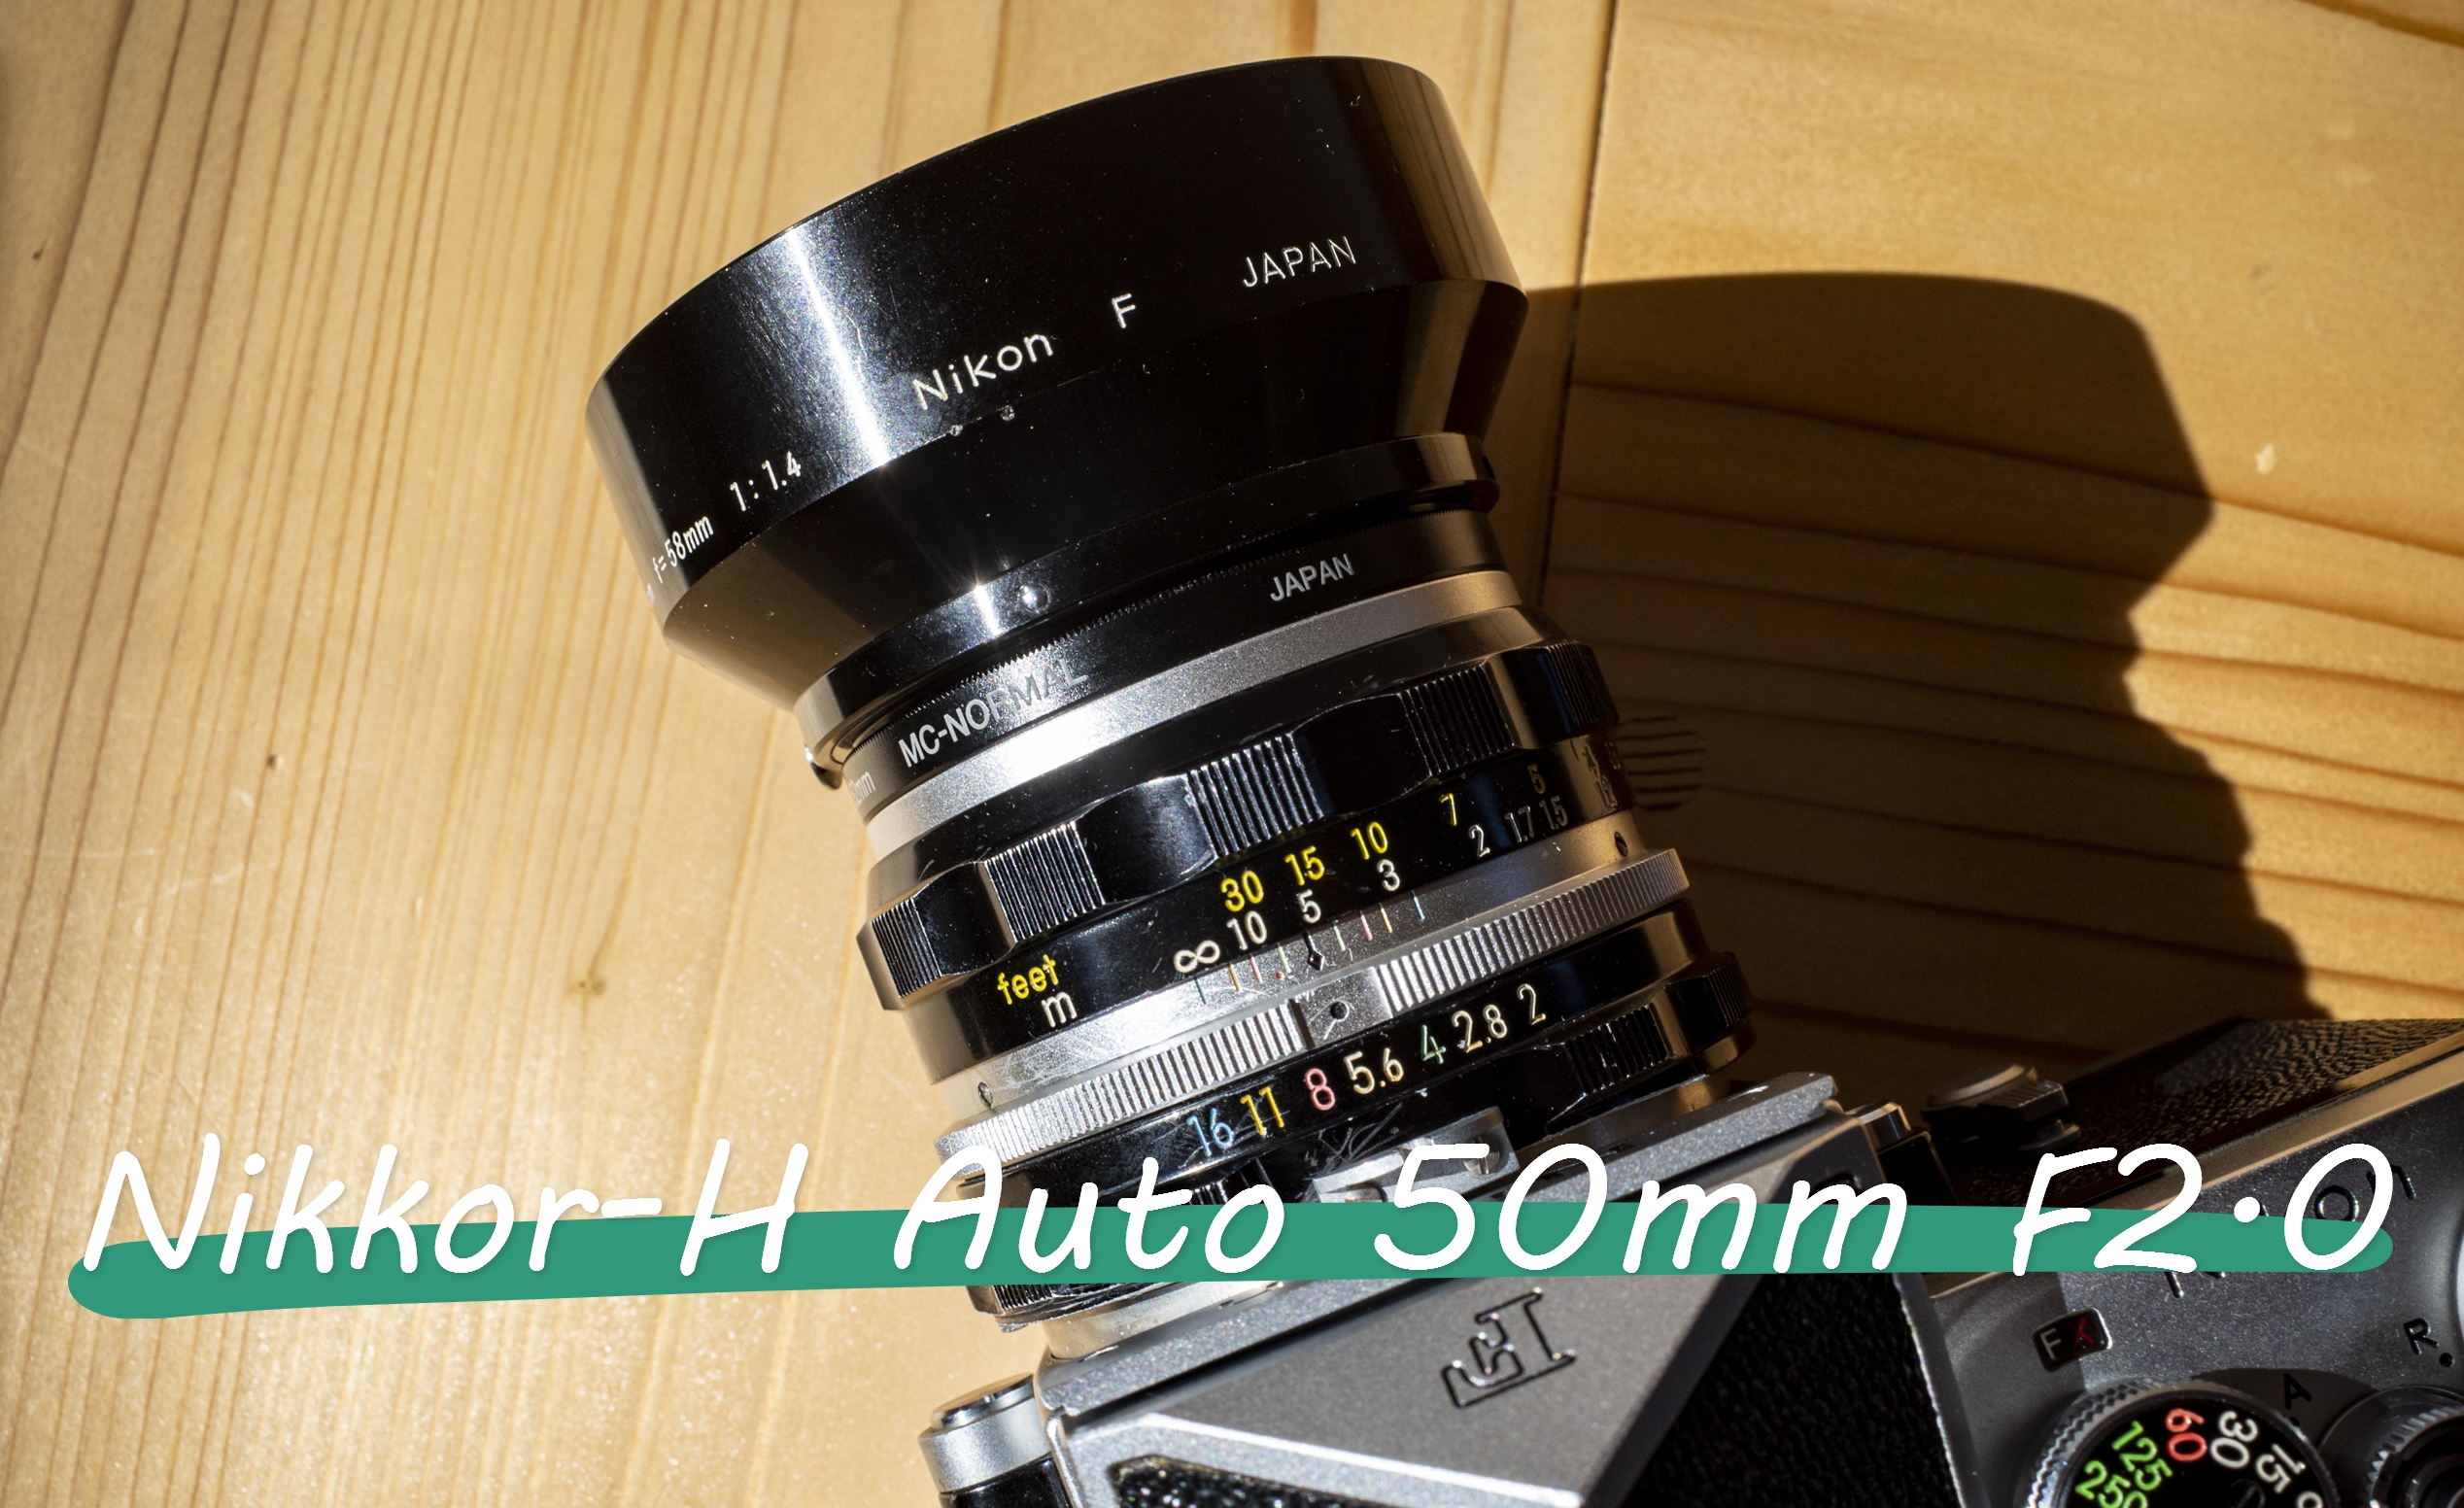 Nikkor-H Auto 50mm F2.0】ニコン F2 に合わせるためにあえて普及版 